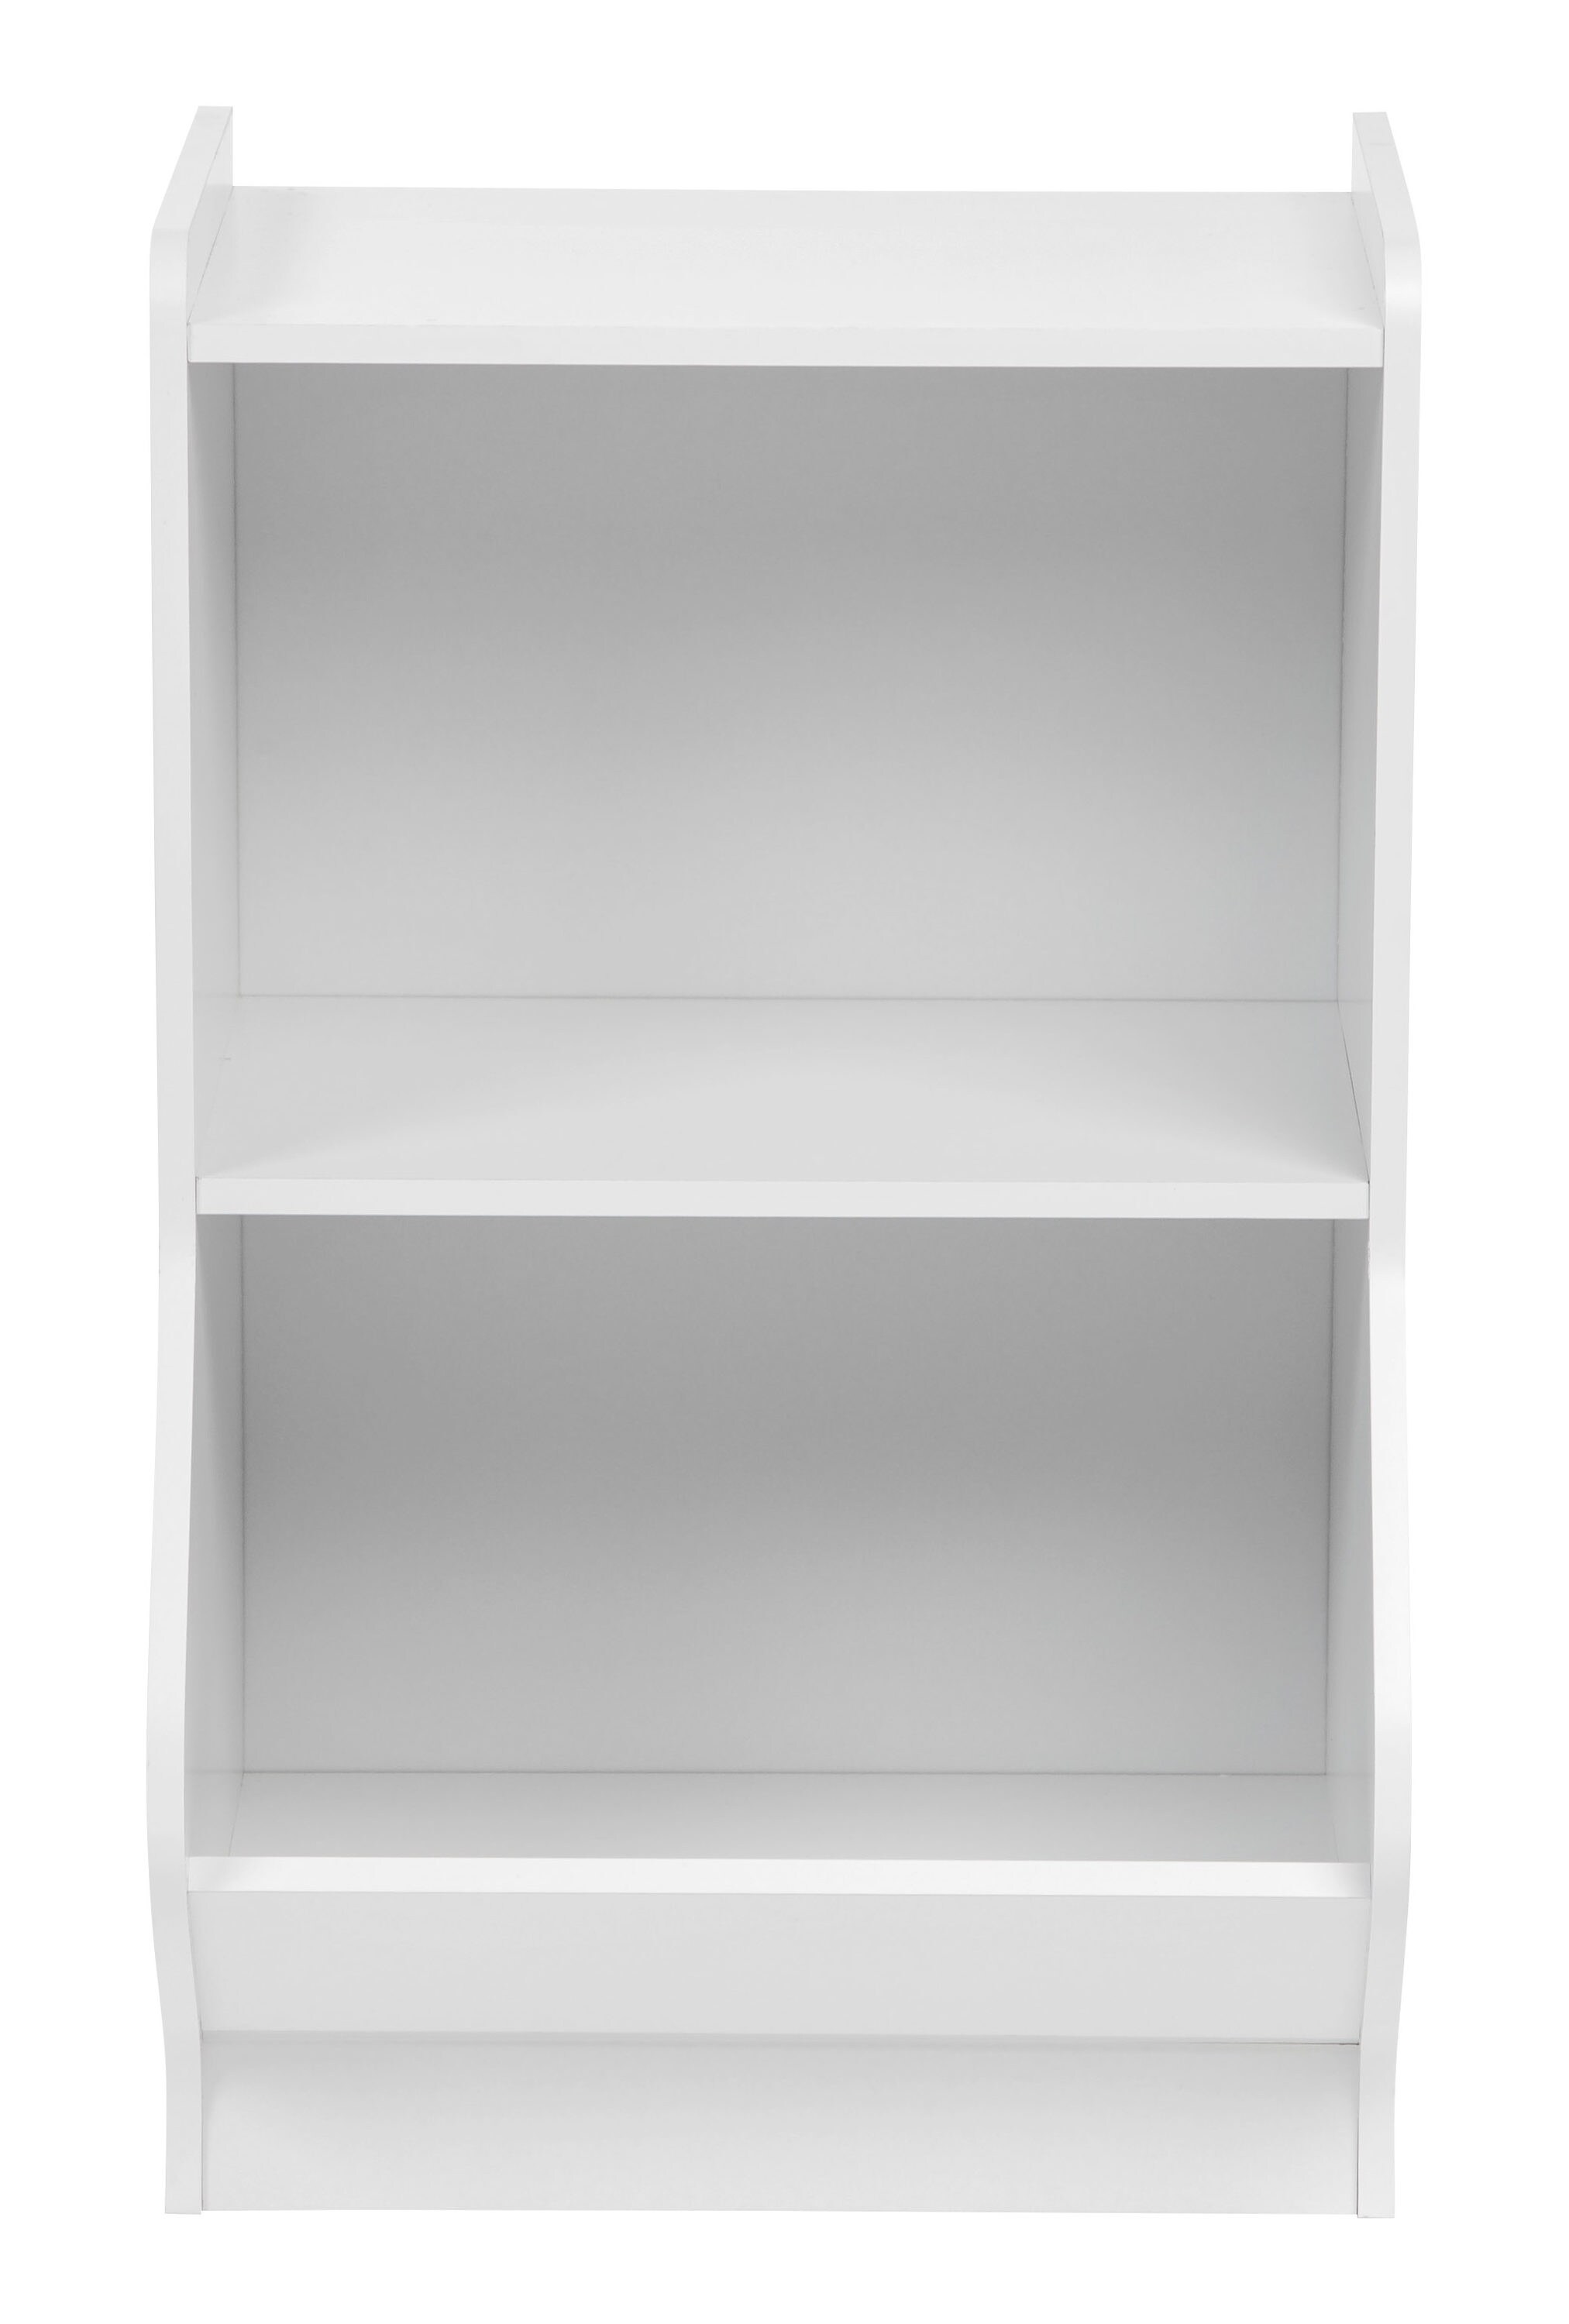 IRIS White 2-Tier Storage Organizer Shelf with Footboard 596032